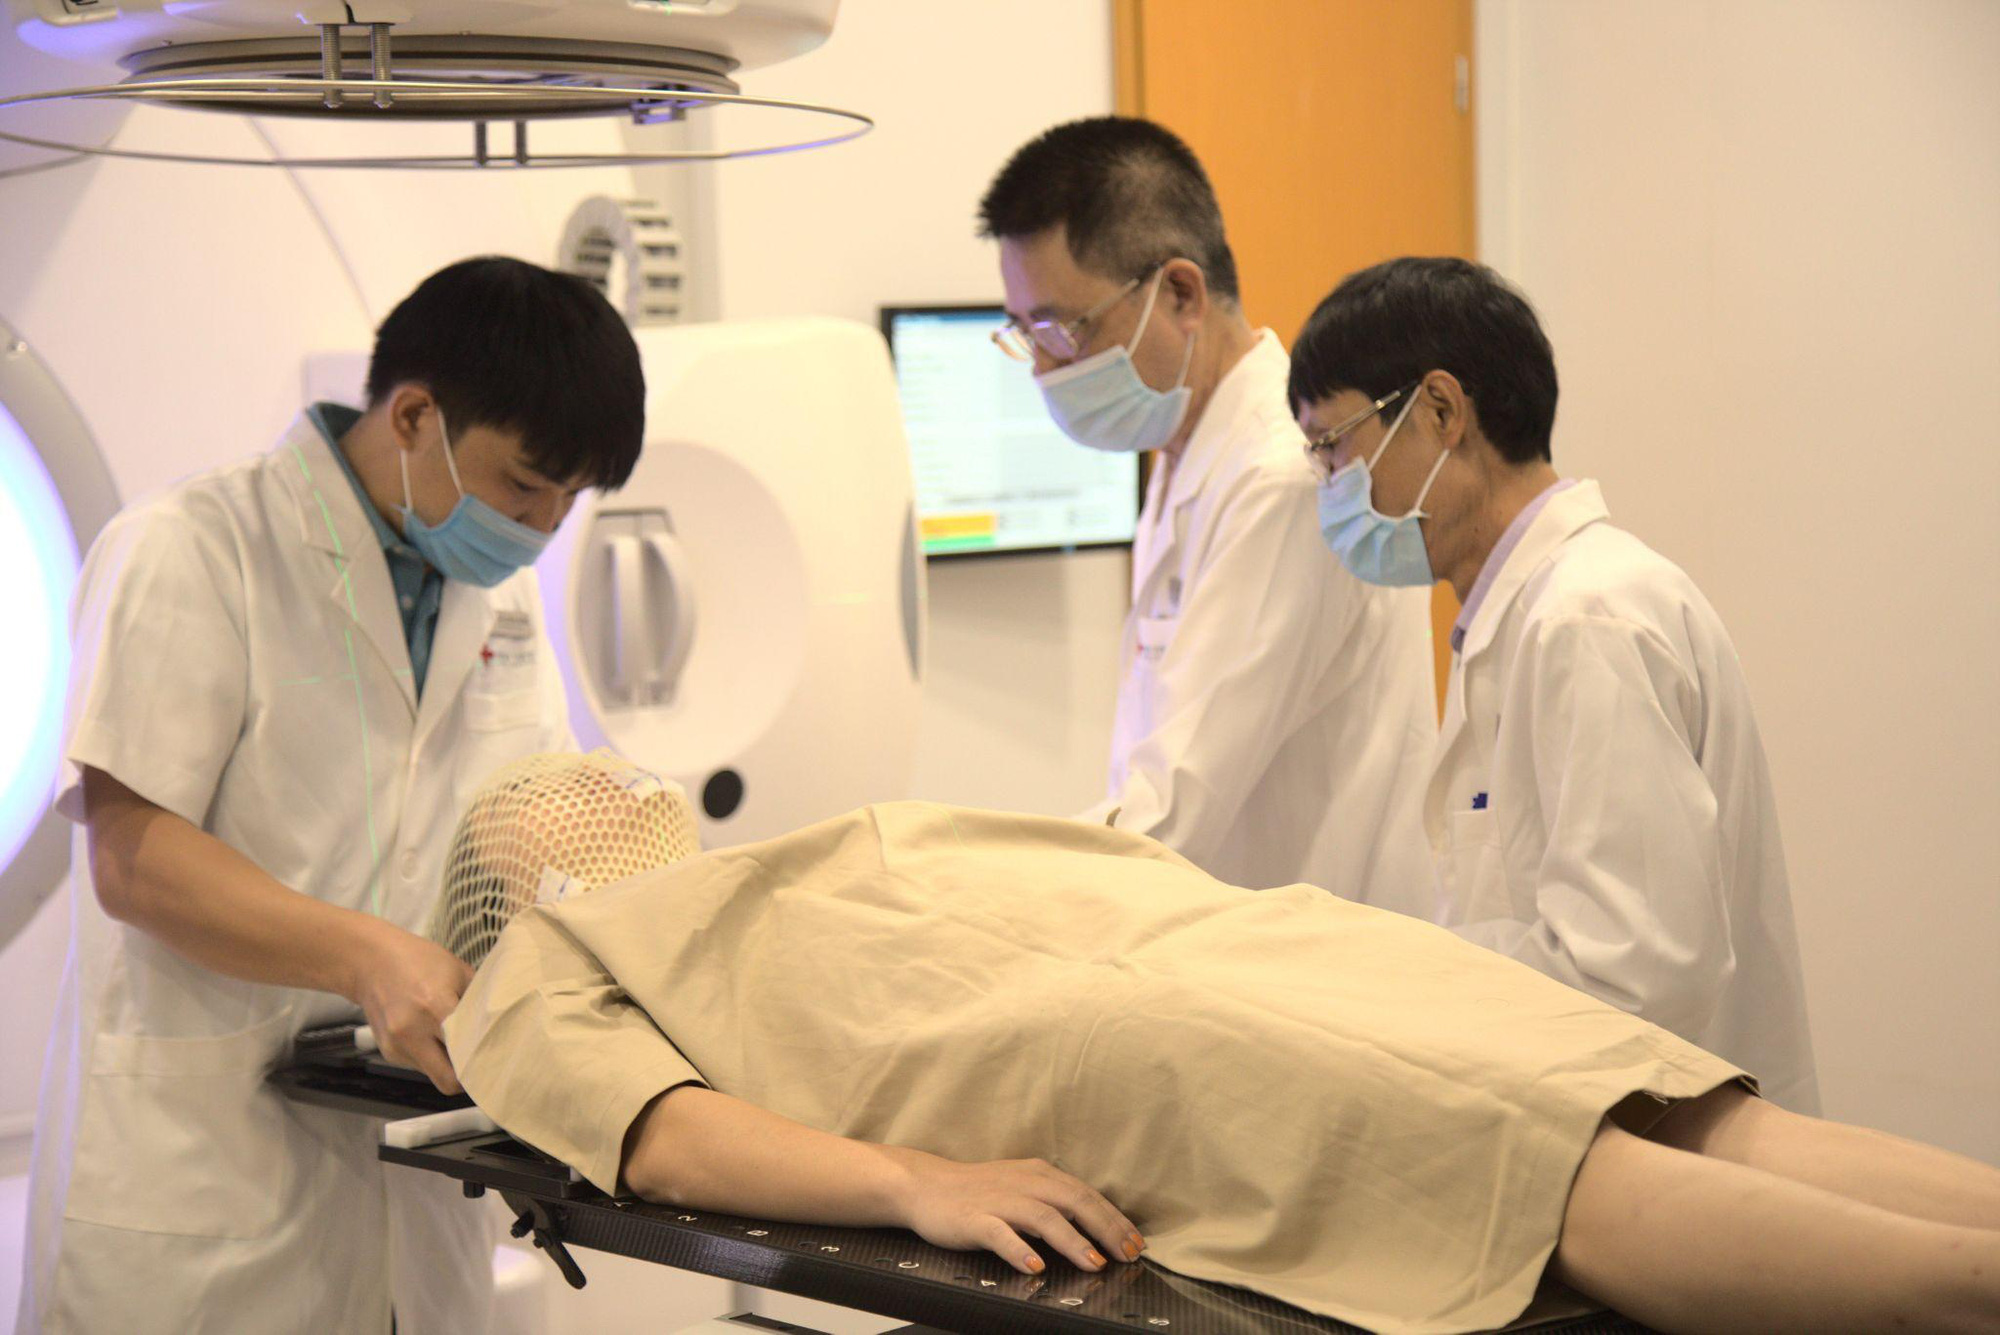 Đối với xạ trị, thời gian từ thăm khám, chẩn đoán đến thực tế điều trị tại Hưng Việt chỉ mất 2-5 ngày, thay vì 1-2 tháng tại các cơ sở y tế khác khi quá tải